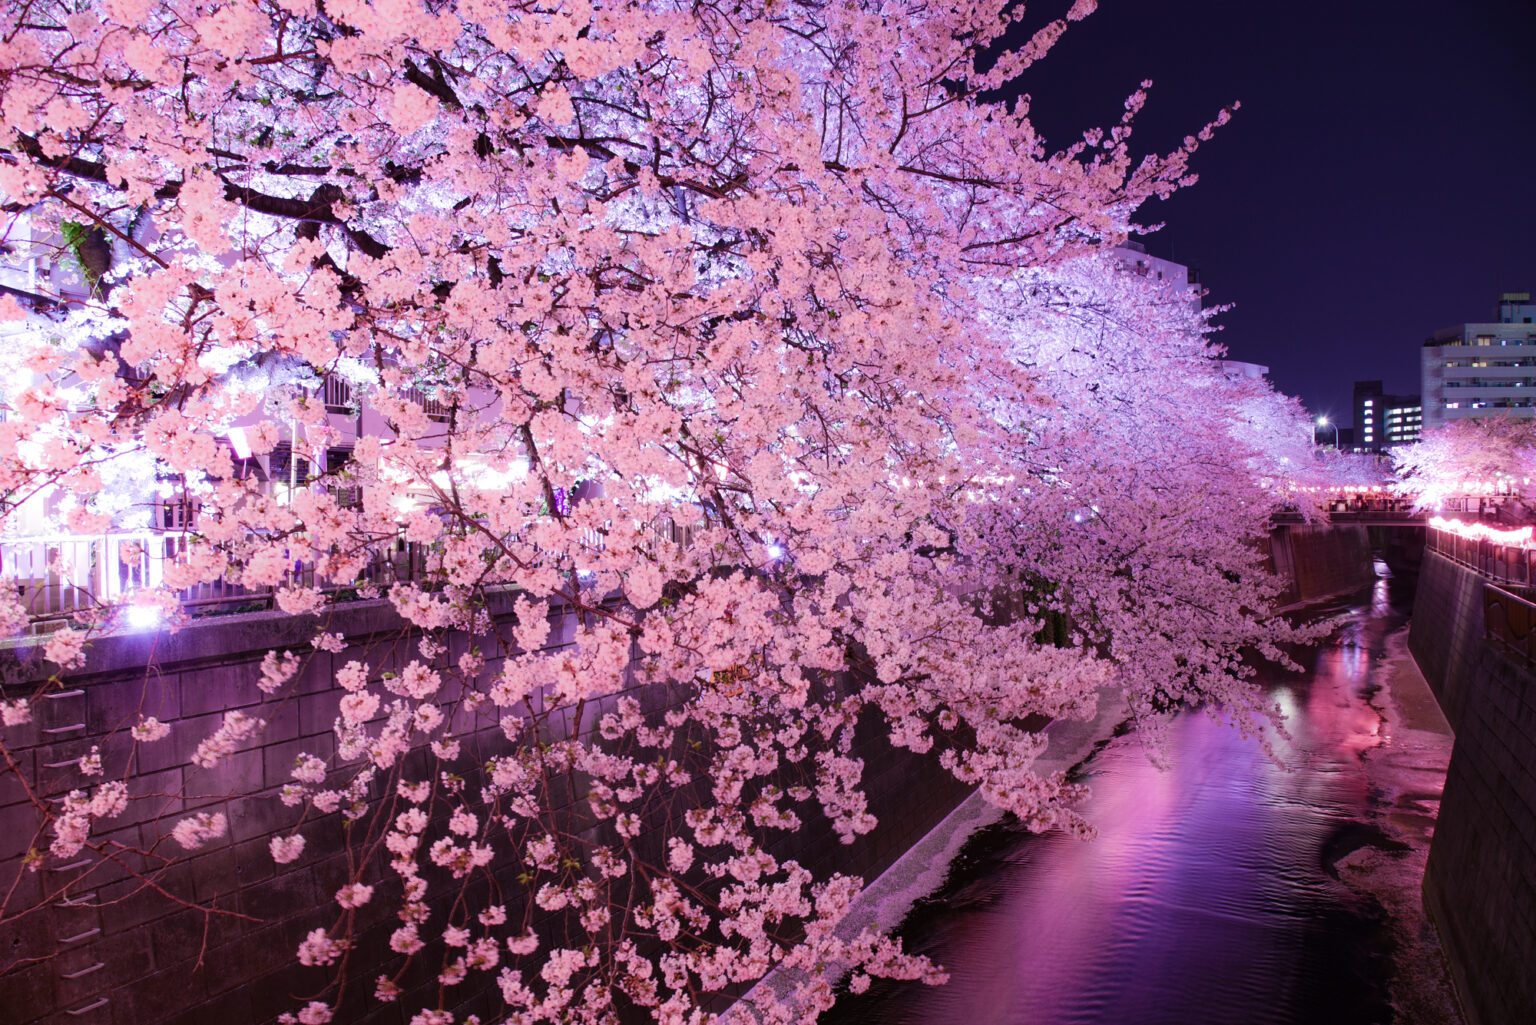 夜ライトアップされた満開の桜並木